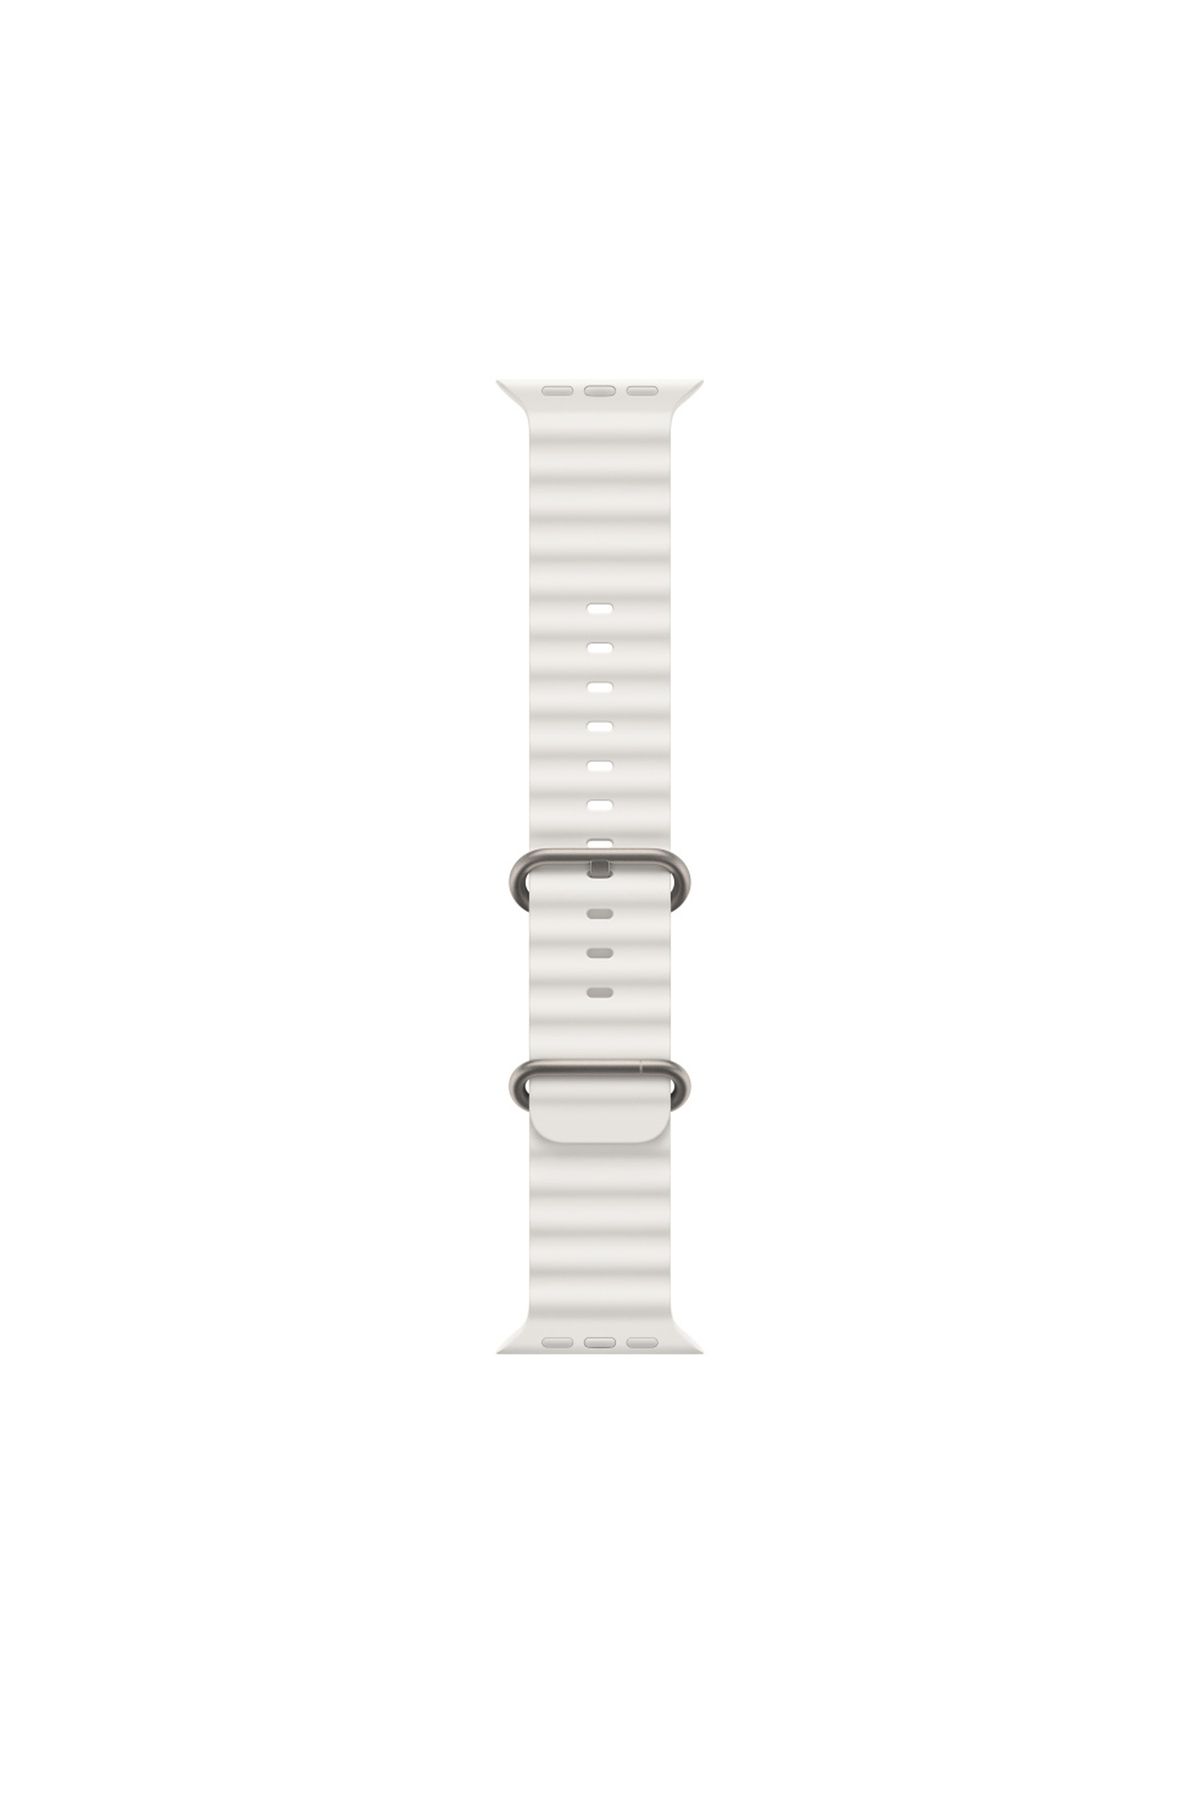 Global 42-49mm Yeni Nesil Apple Uyumlu Akıllı Saat Kordonu Silikon Beyaz WNE0981